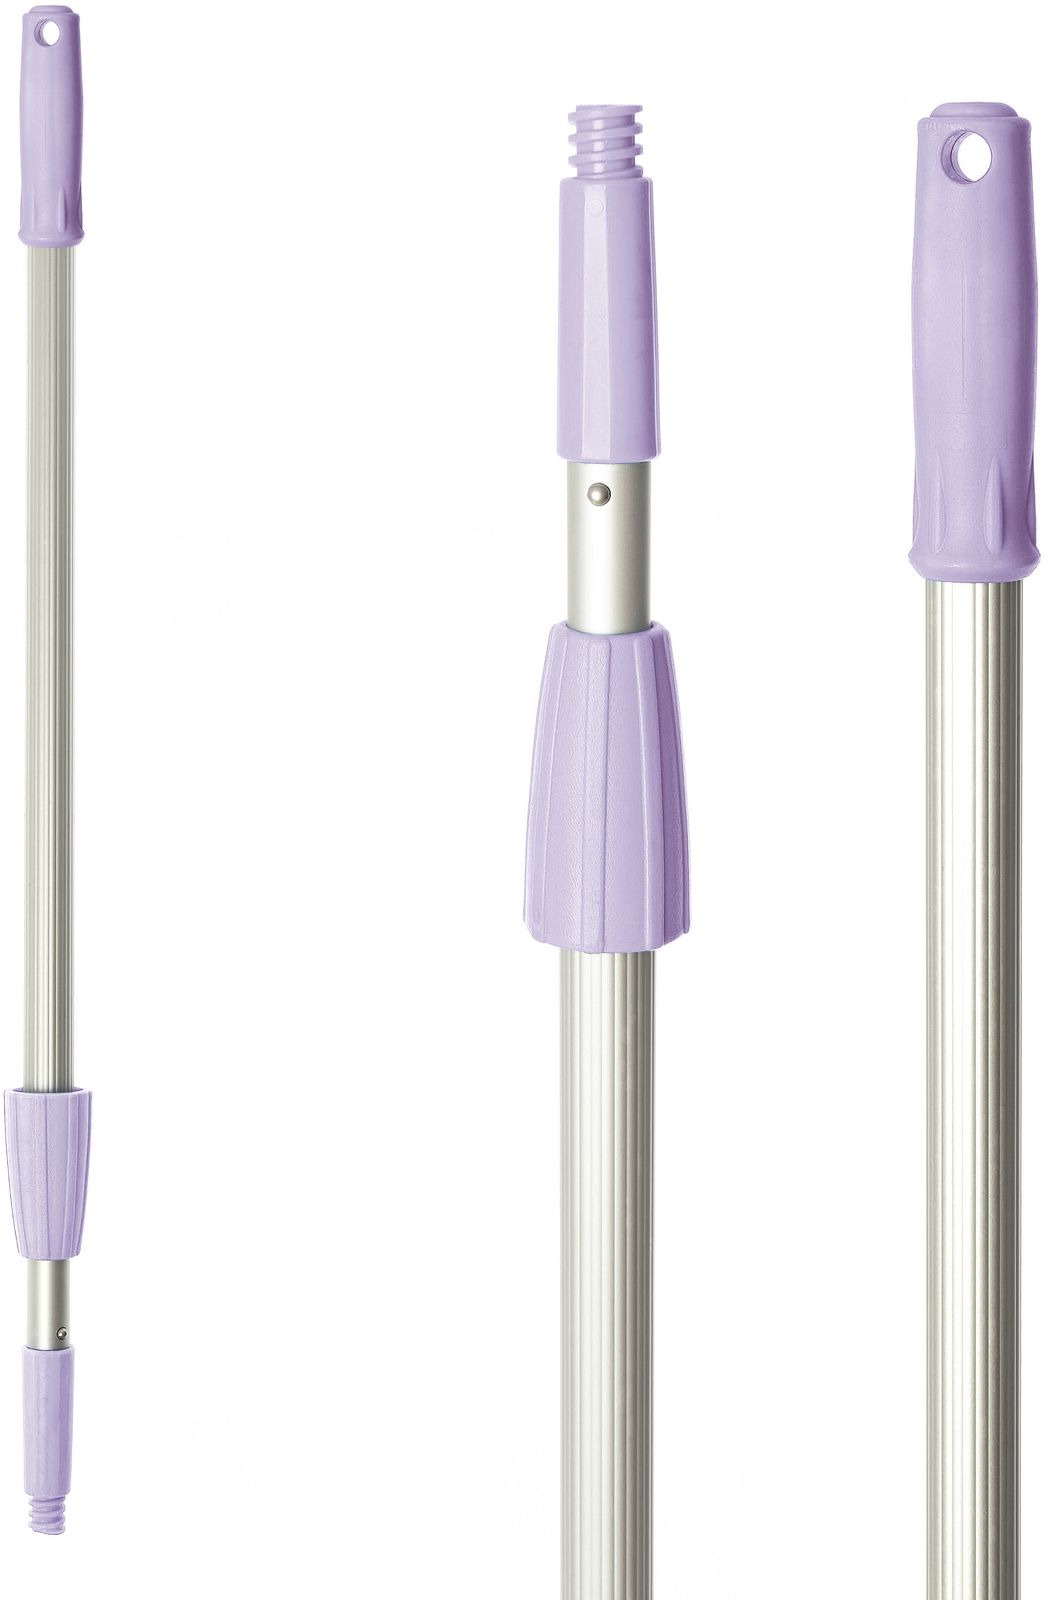 фото Рукоятка для швабры HQ Profiline, фиолетовый, 2-секционная, 120 см Hqprpfiline